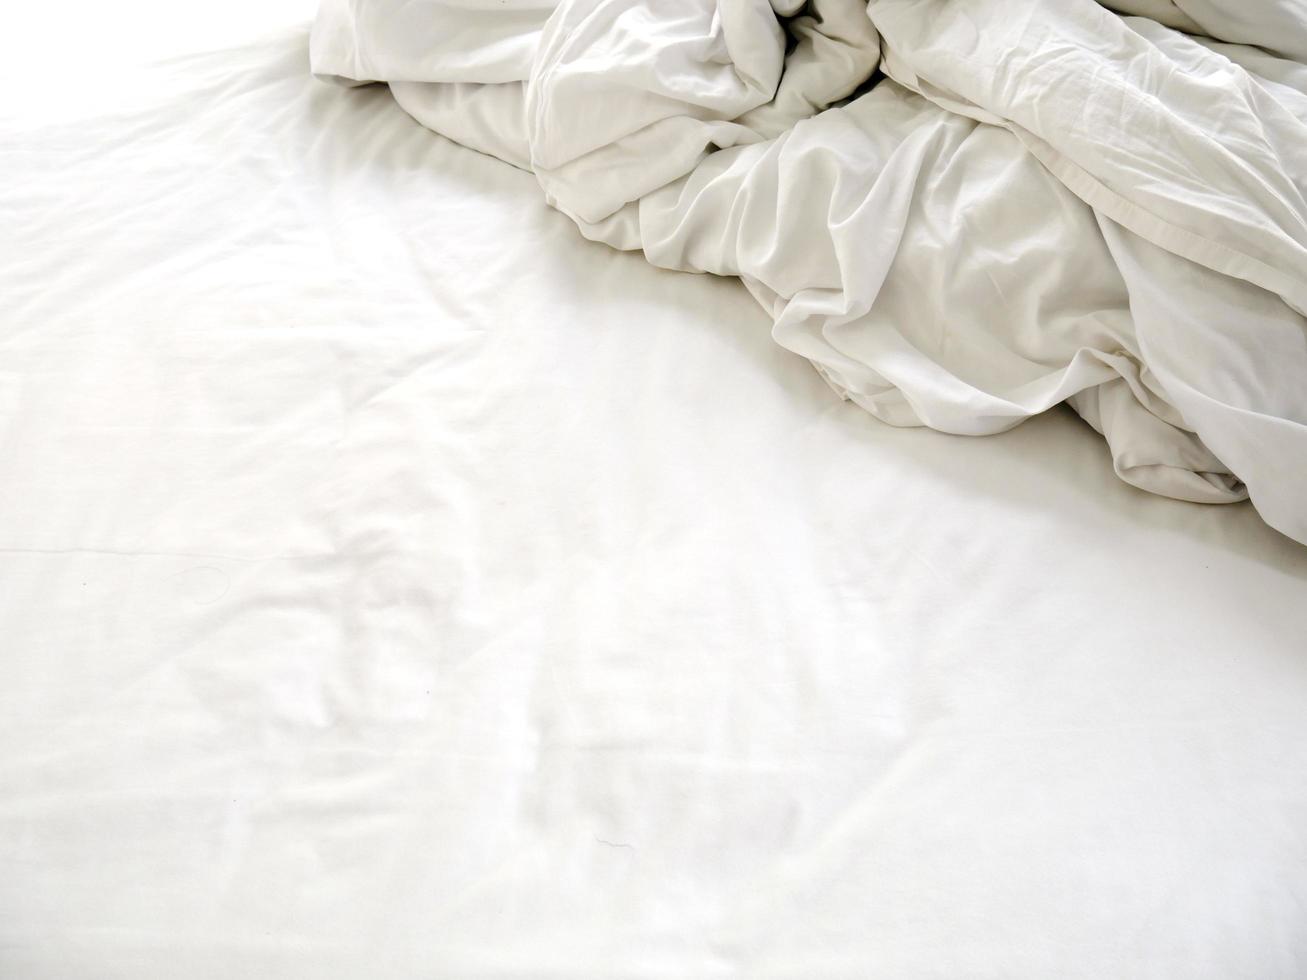 vita lakan på en obäddad säng foto